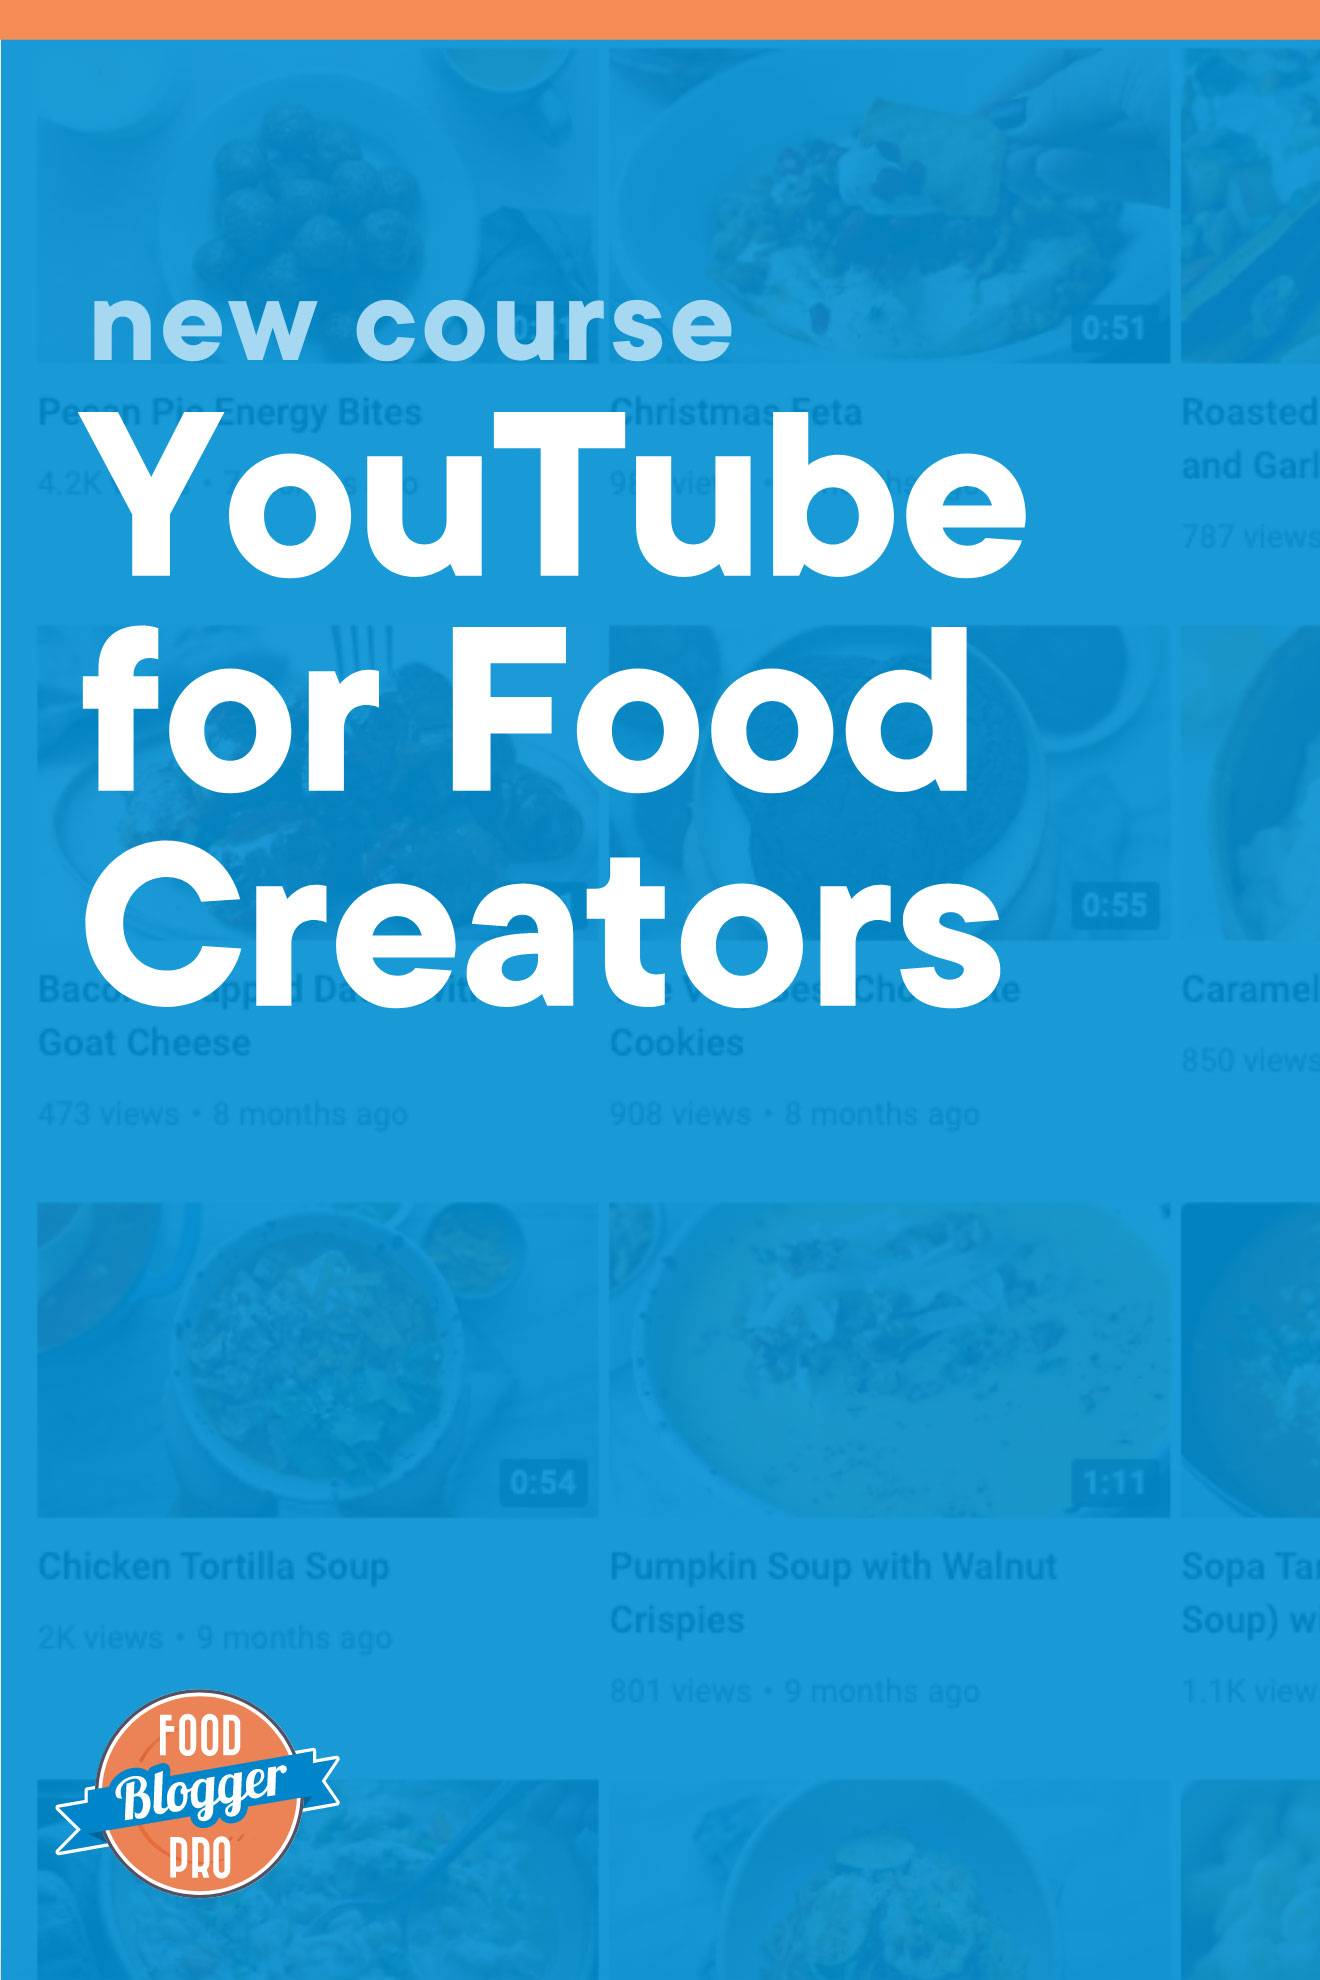 皇冠体育投注下载蓝图形YumYouTube频道读作“新课程:YouTube为食品制作者提供资讯”,与Foodblogist Pro标识